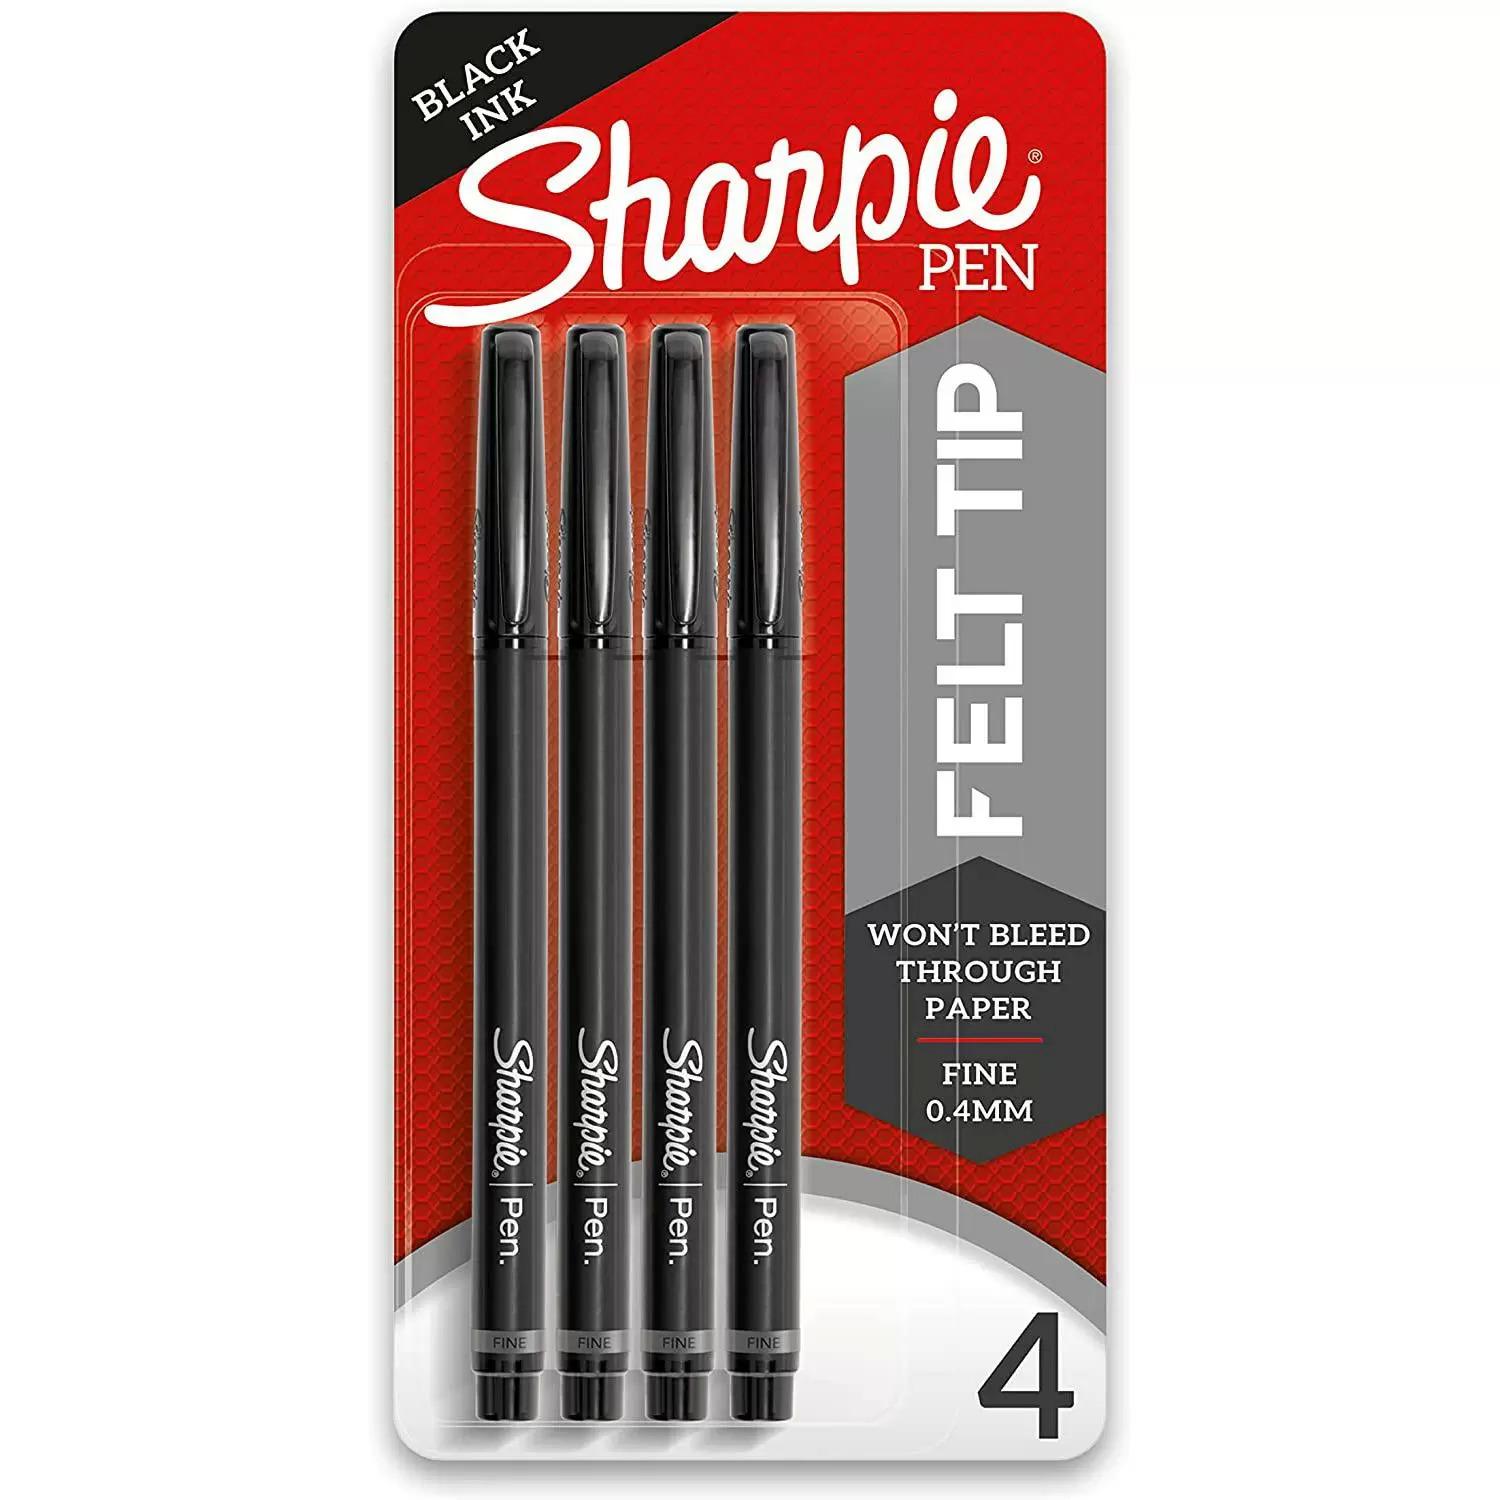 4 Sharpie Fine Point 0.4 mm Felt Tip Pens for $4.03 Shipped